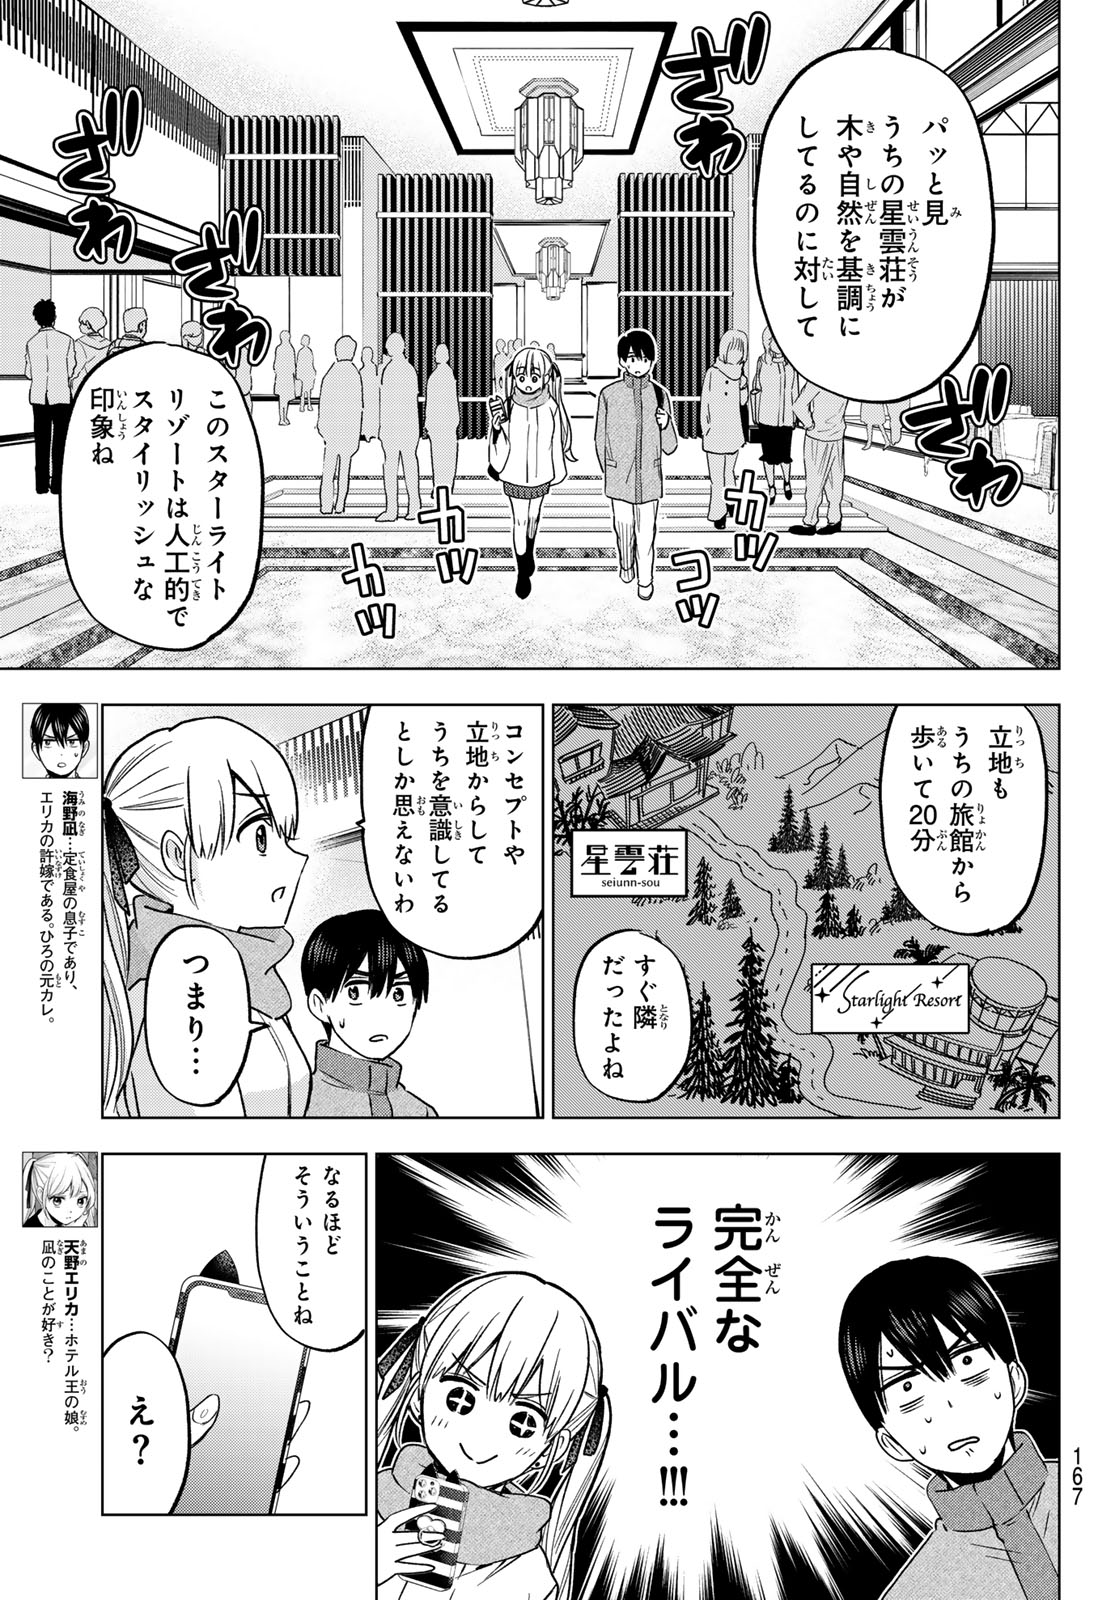 Kakkou no Iinazuke - Chapter 189 - Page 3